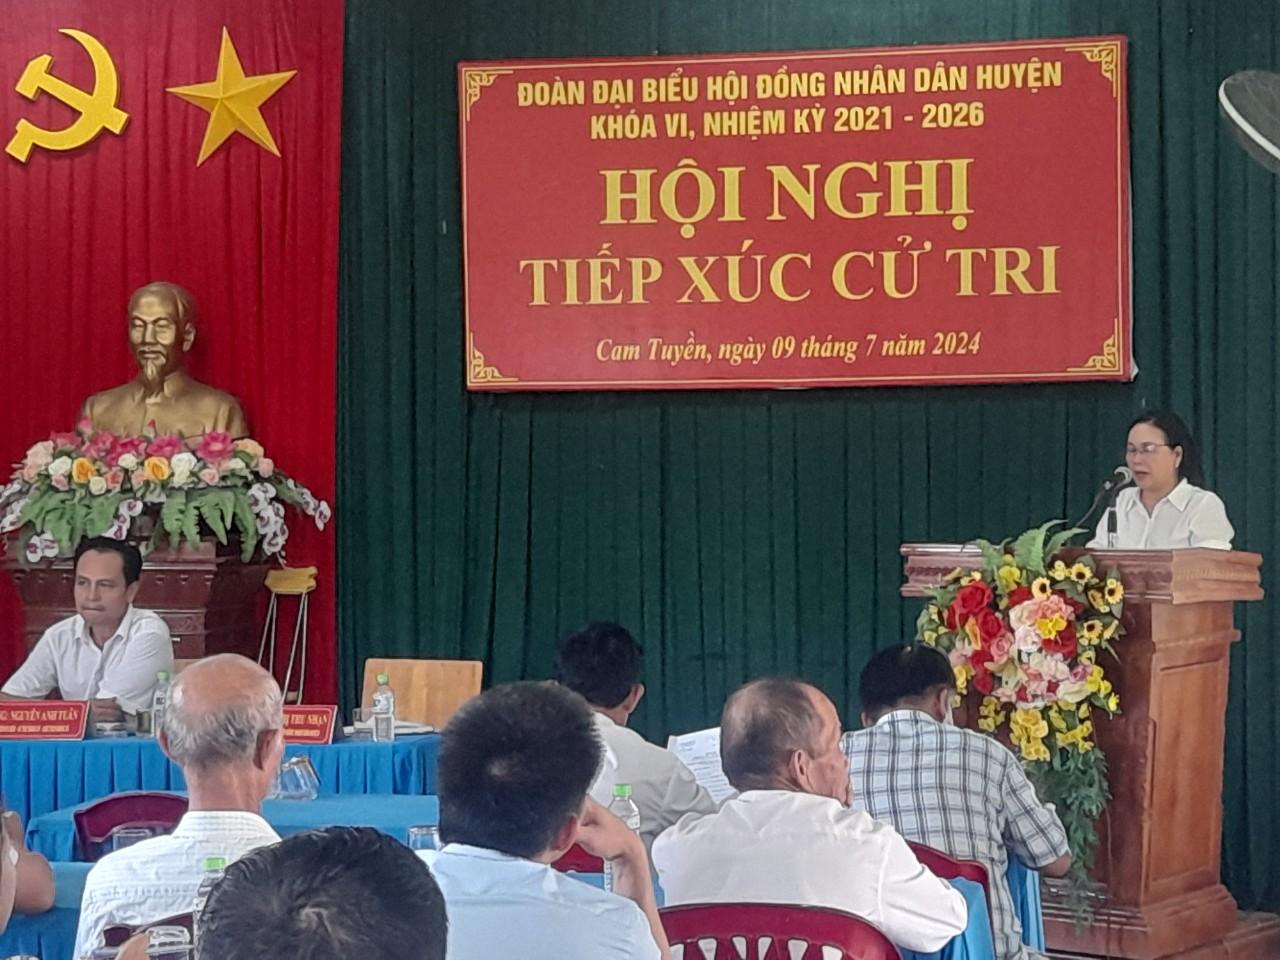 Đoàn Đại biểu HĐND huyện tiếp xúc cử tri trước kỳ họp lần thứ VI tại địa bàn xã Cam Tuyền